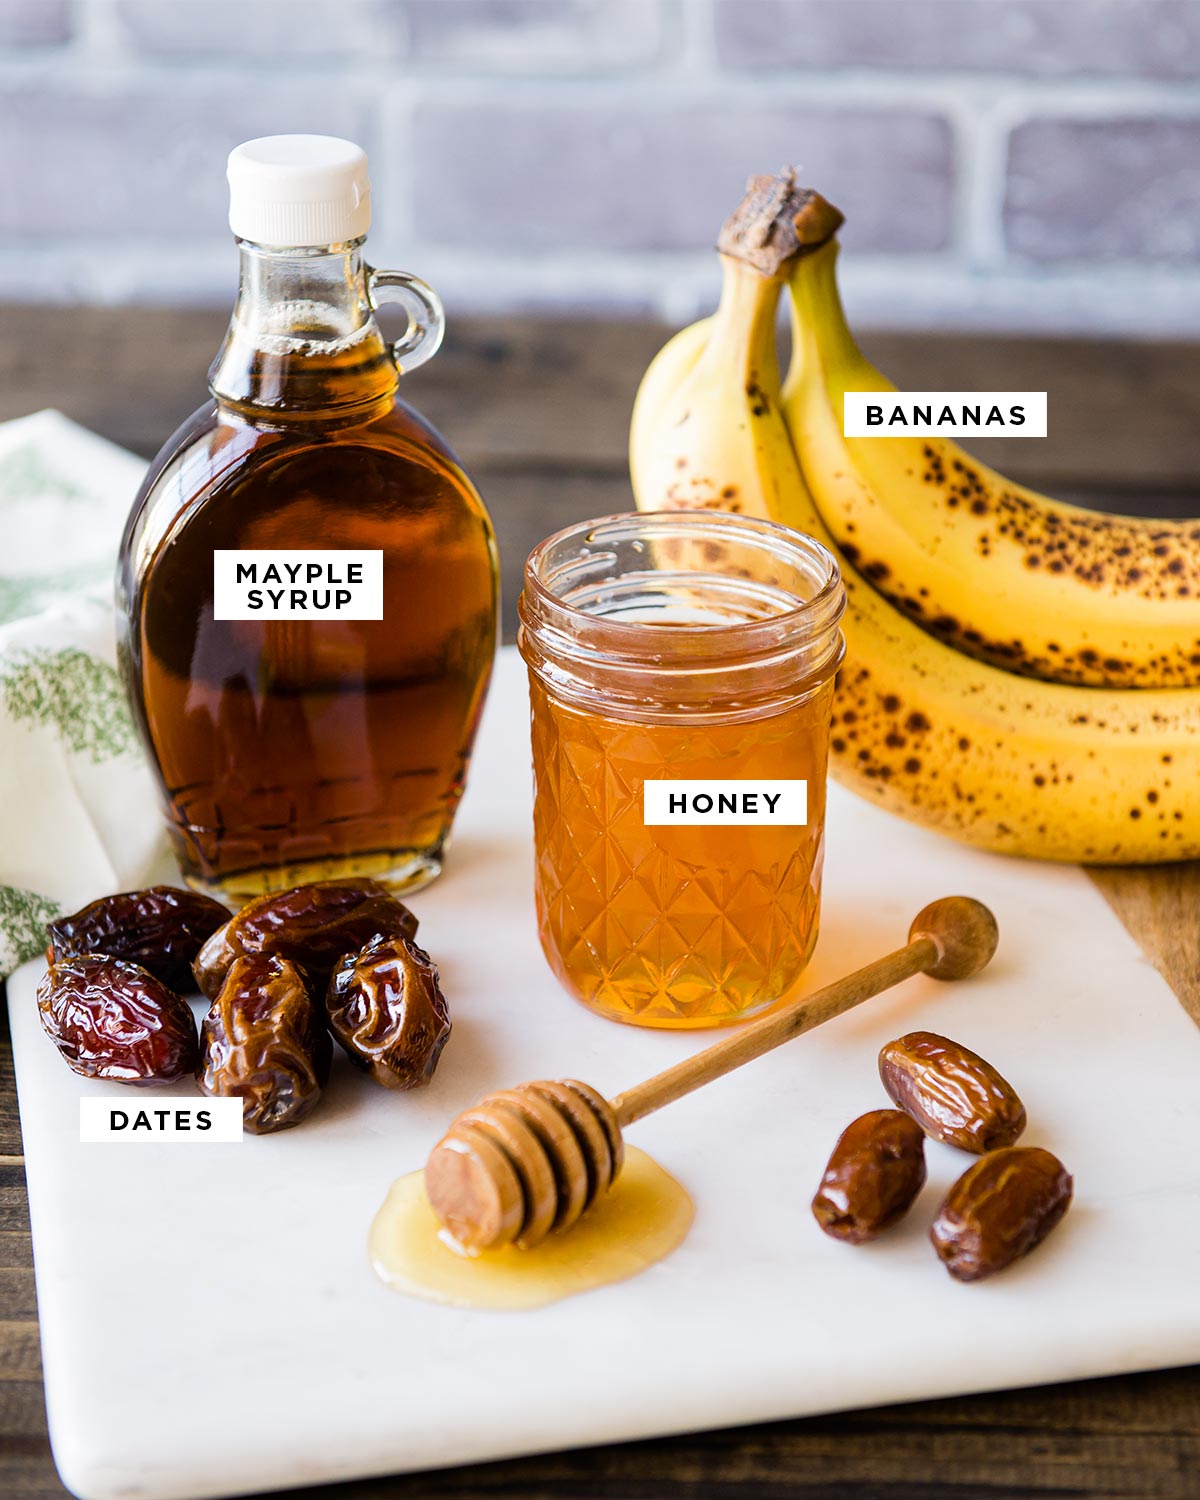 Le 4 migliori alternative salutari allo zucchero etichettate: banane, miele, sciroppo d'acero e datteri.